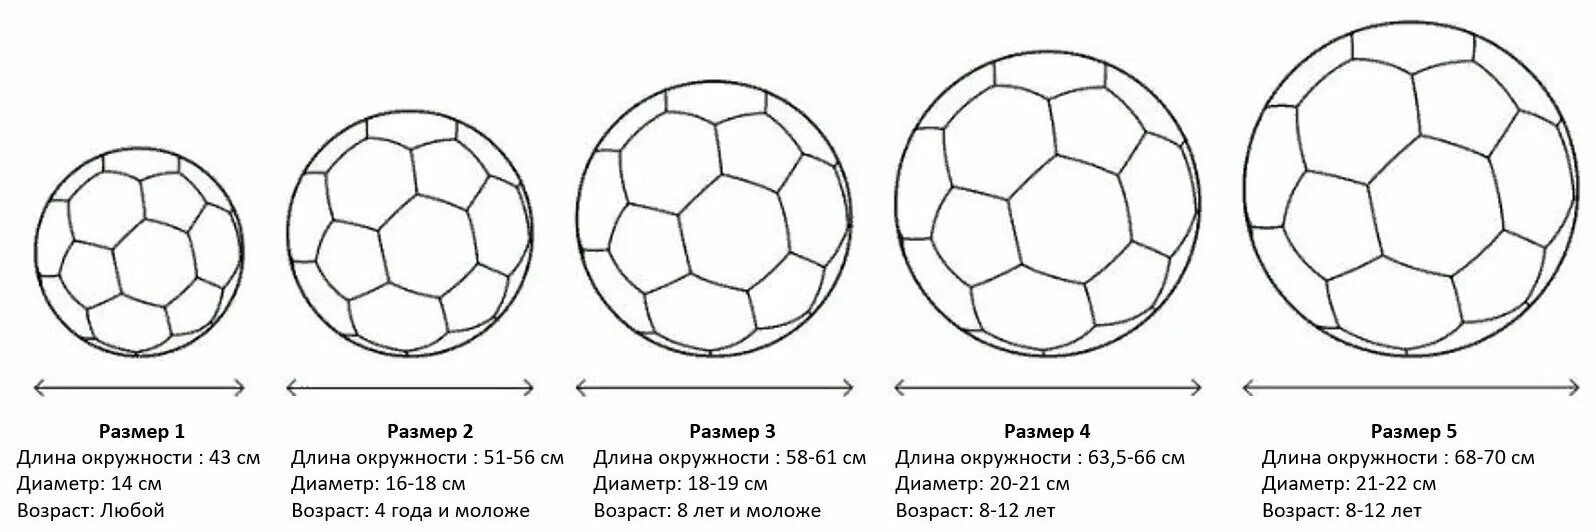 Стандартный размер футбольного мяча диаметр. Футбольный мяч 3 размер диаметр. Таблица размеров футбольных мячей. Мяч футбольный размер 2 Селект.